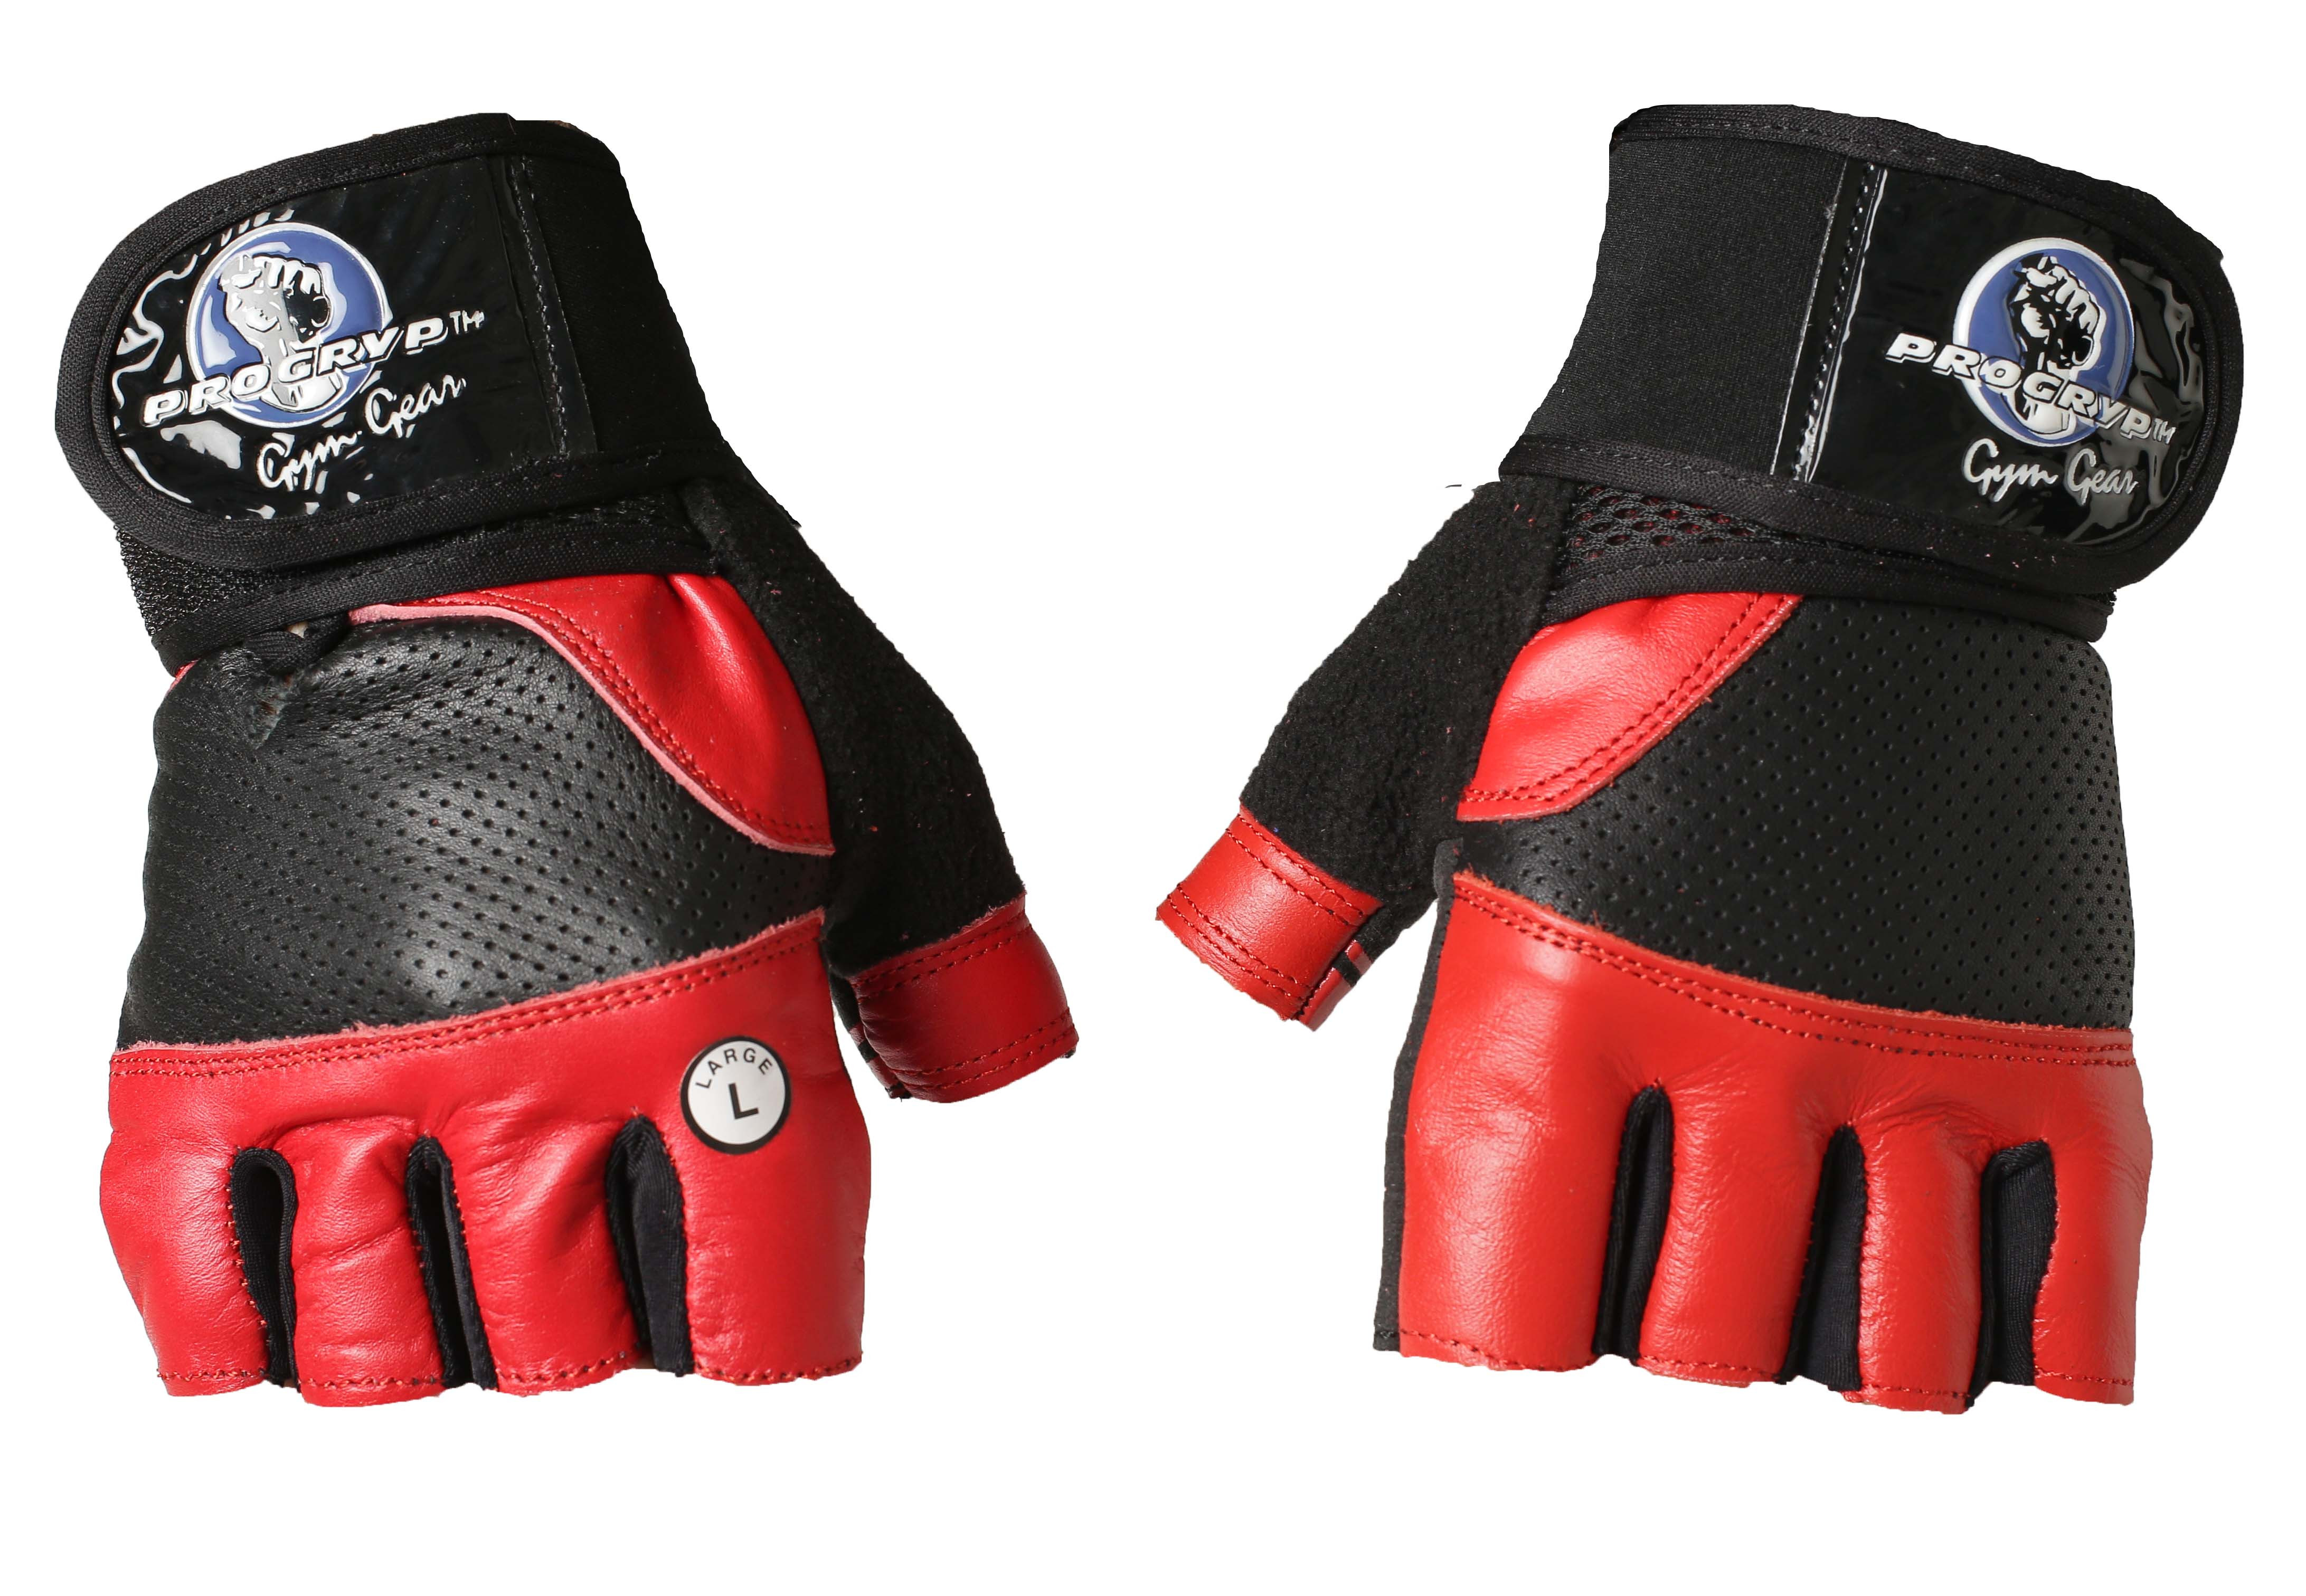 

Перчатки для кроссфита и фитнесса progryp black red